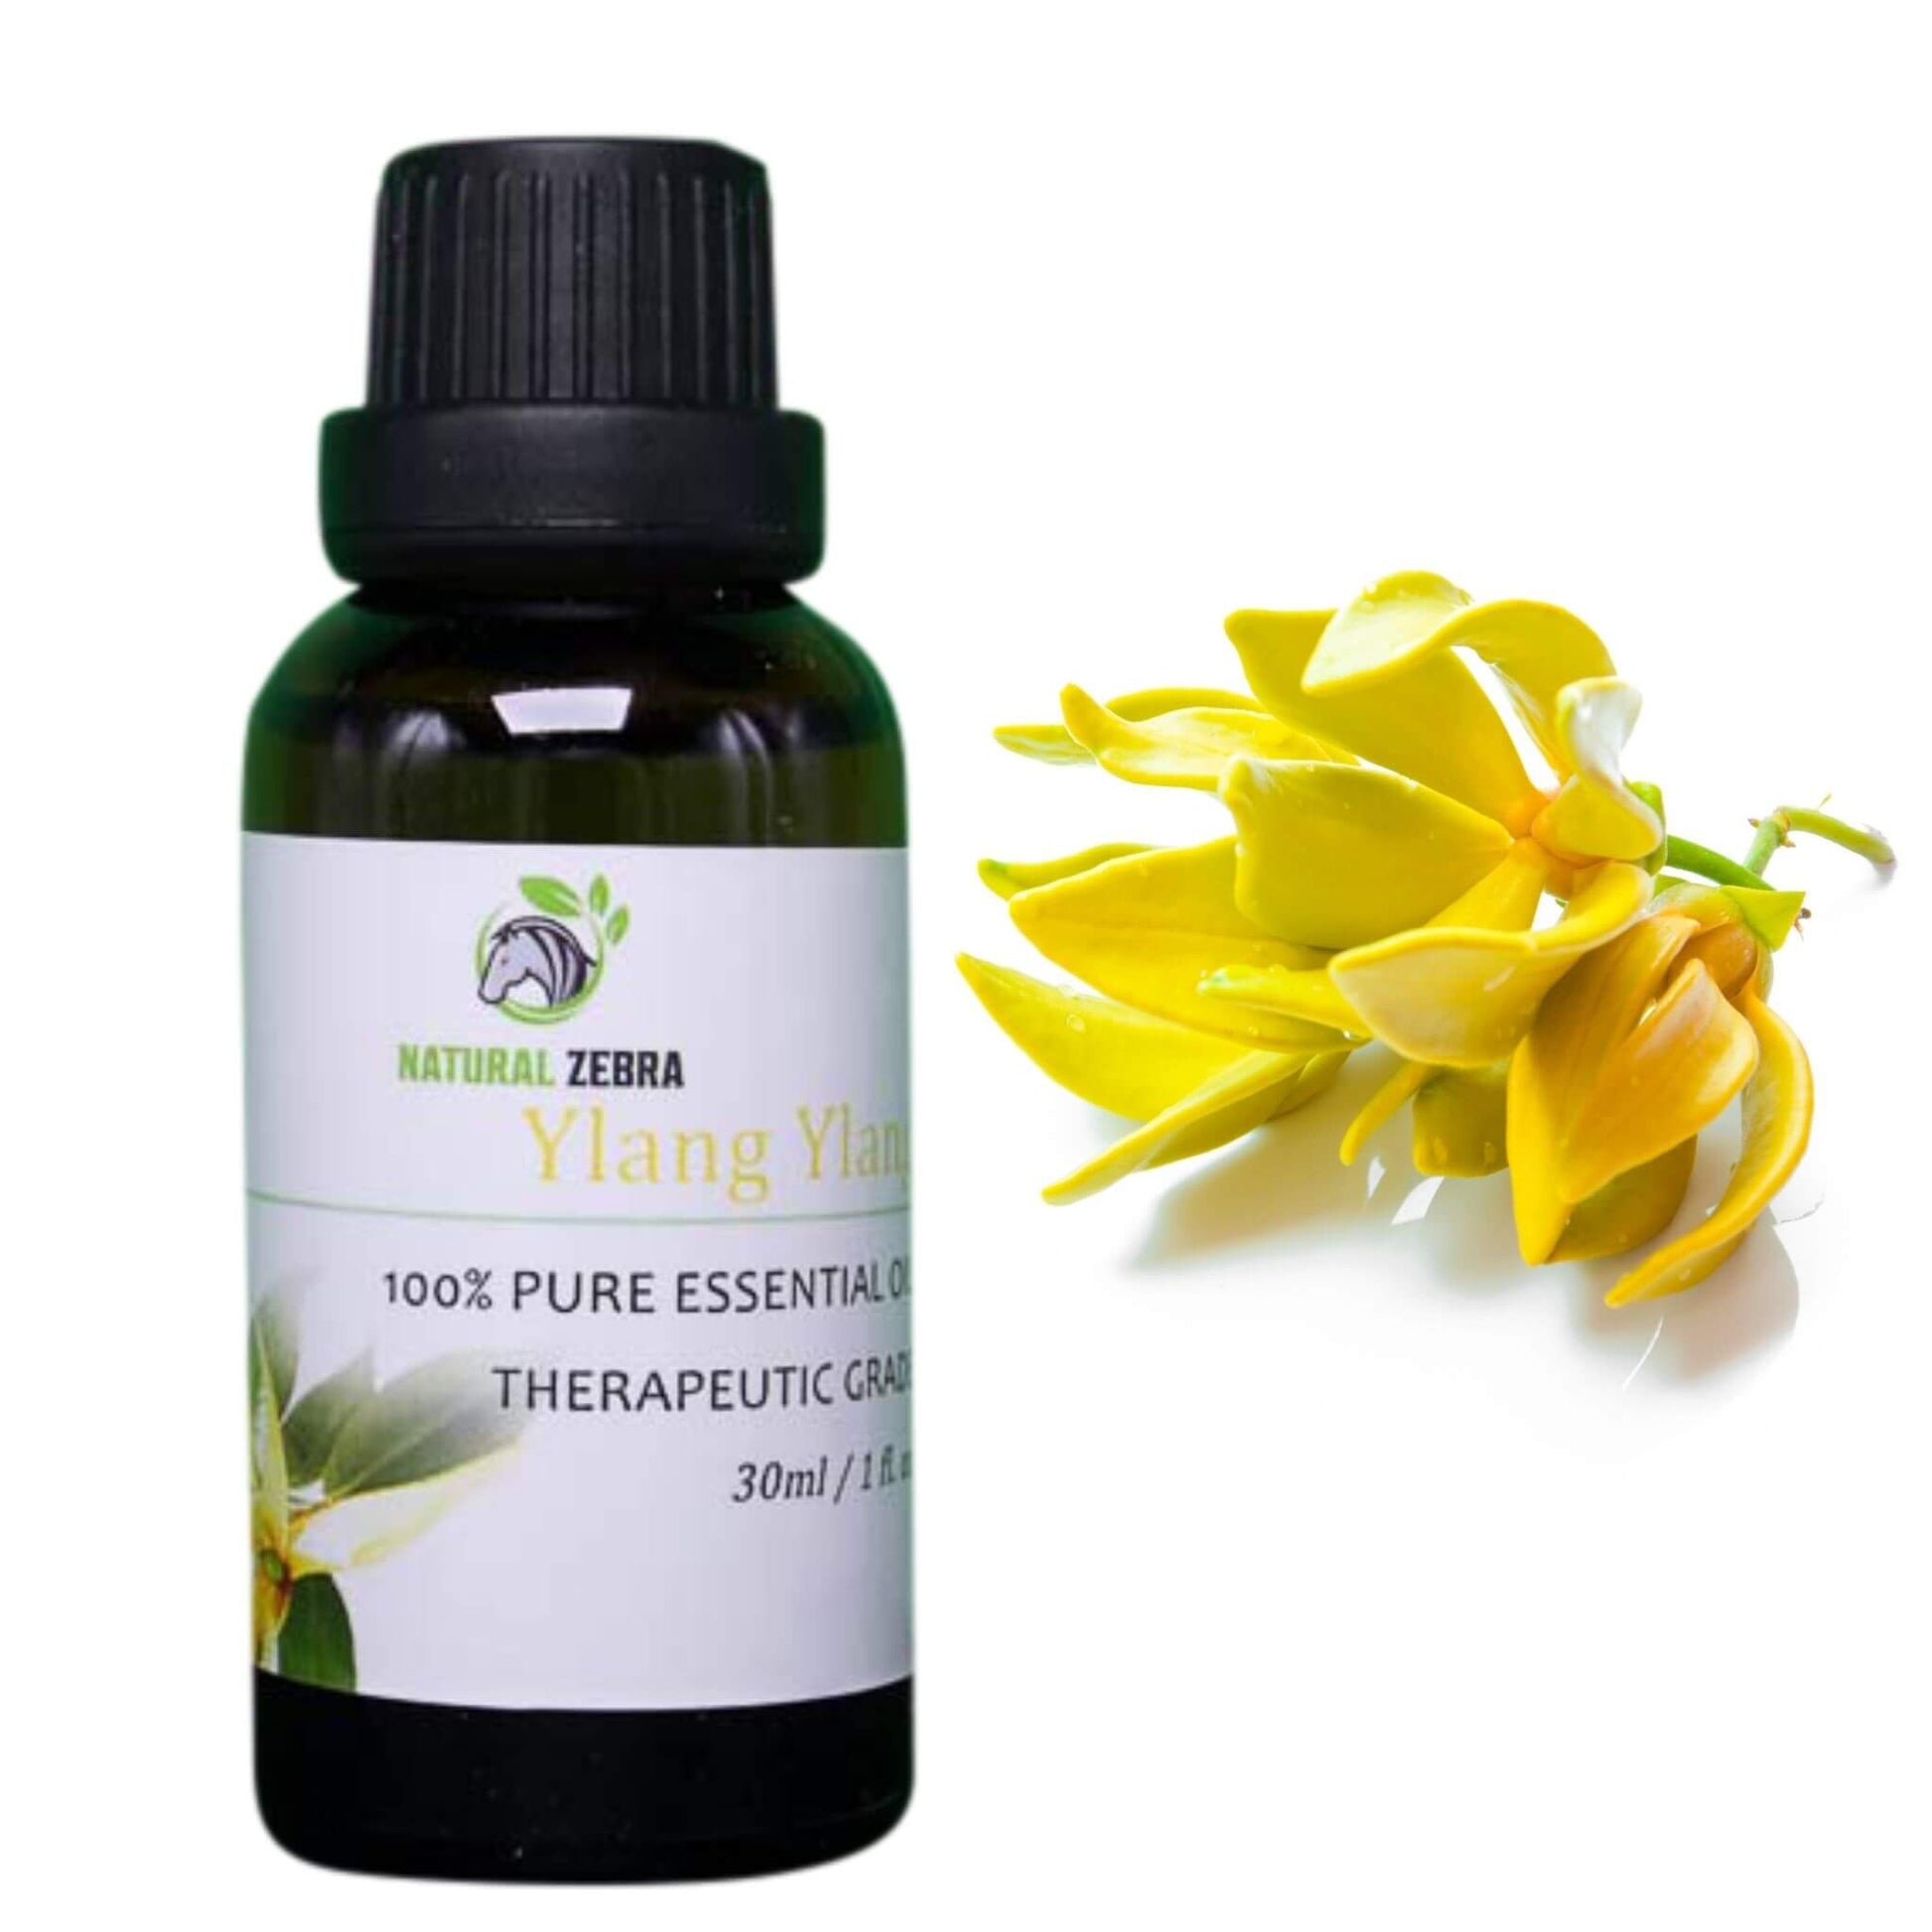 NATURAL ZEBRA | Ylang Ylang Essential Oil - 30 ml / 1 fl.oz